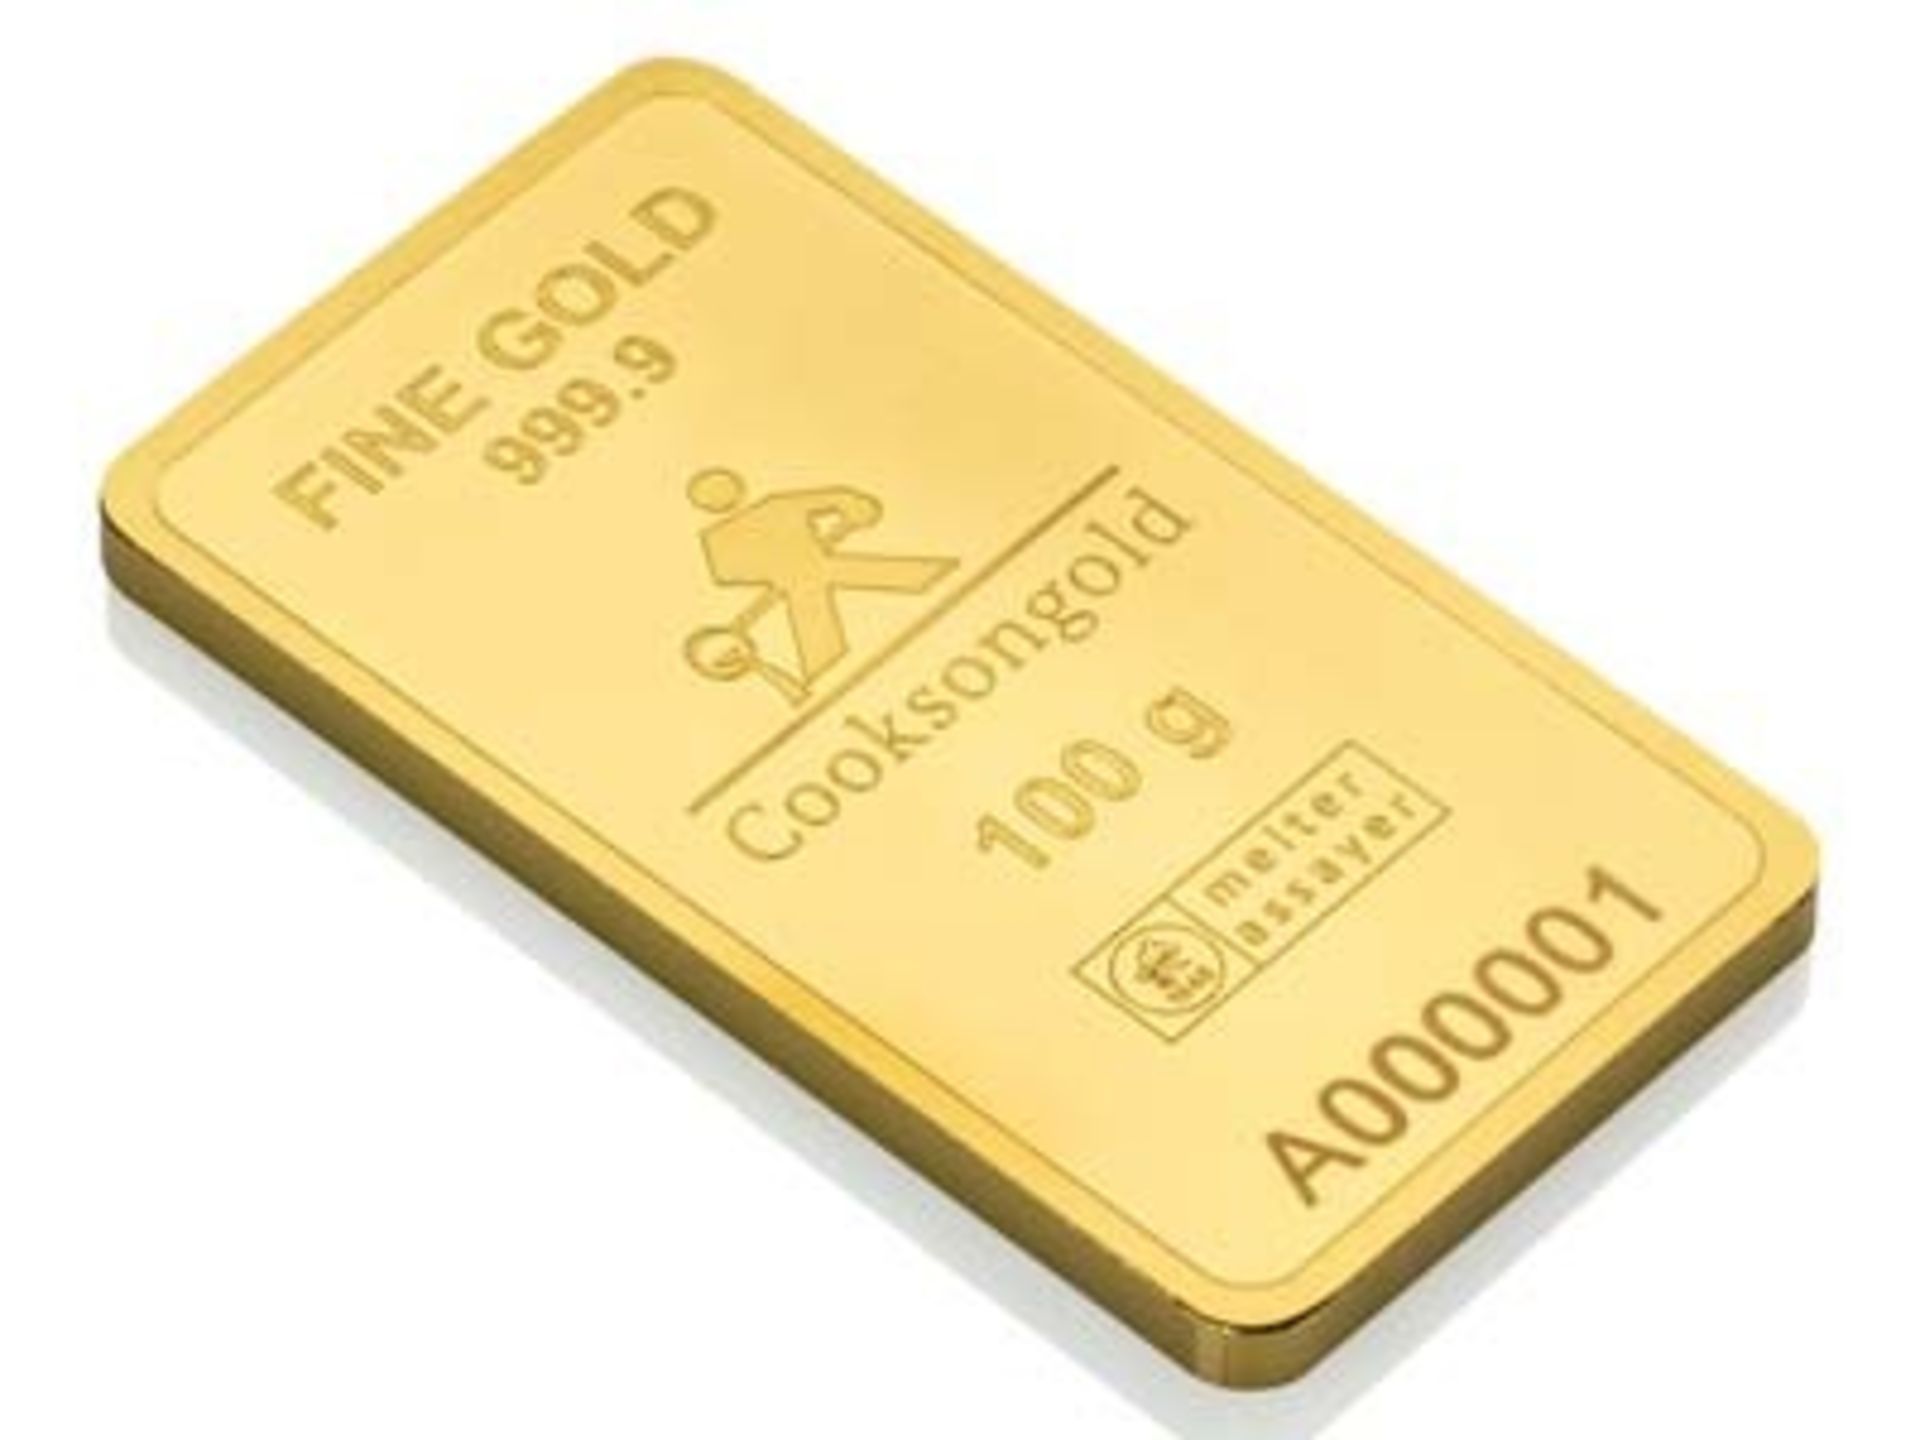 No VAT 100g 24K Gold Bar - Deliveries Commencing The 6th December